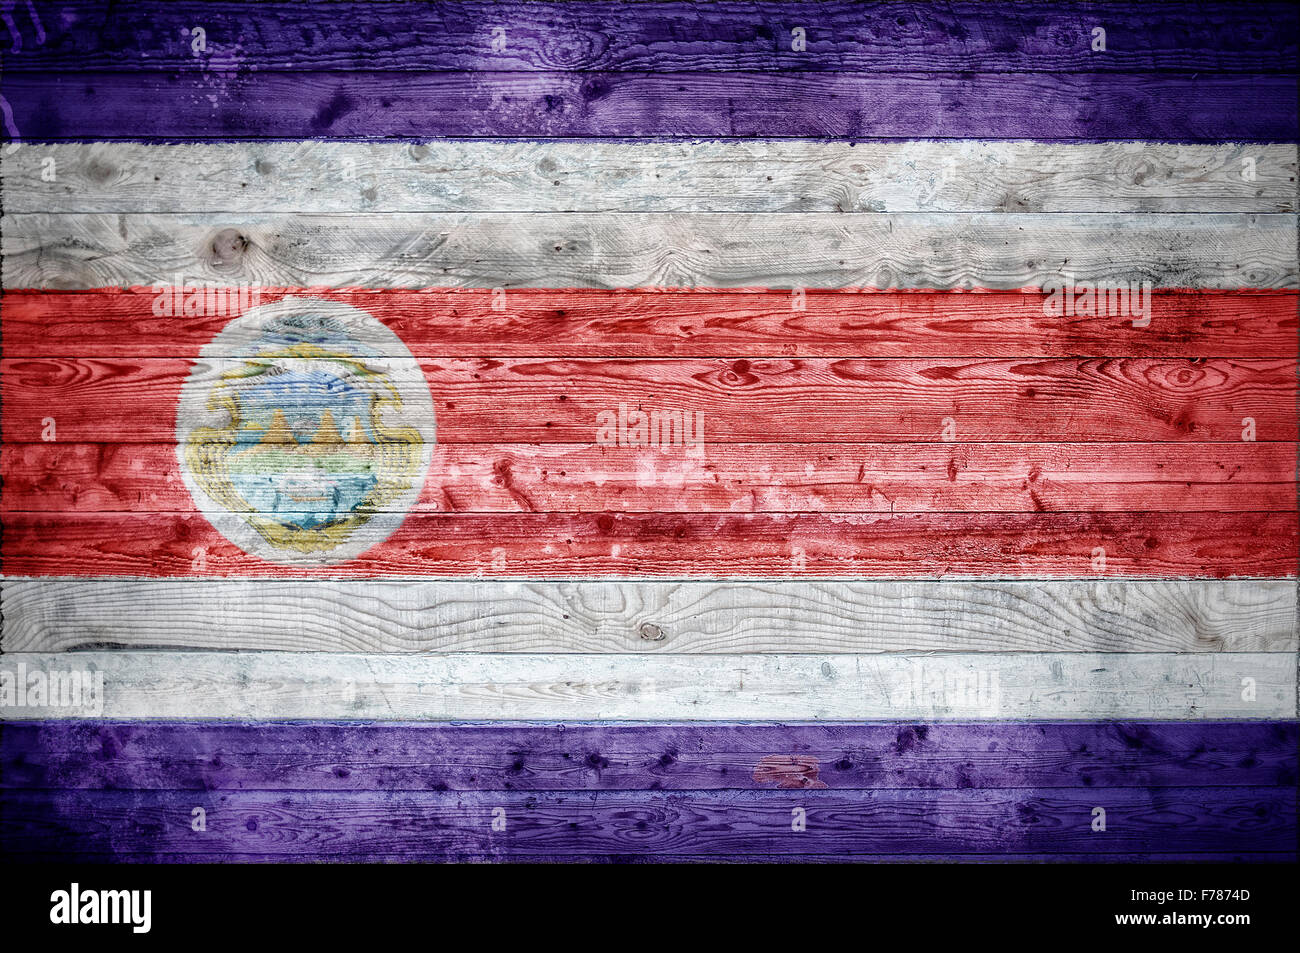 Ein bandtypischen Hintergrundbild der Flagge Costa Ricas auf Holzbrettern einer Wand oder Boden gemalt. Stockfoto